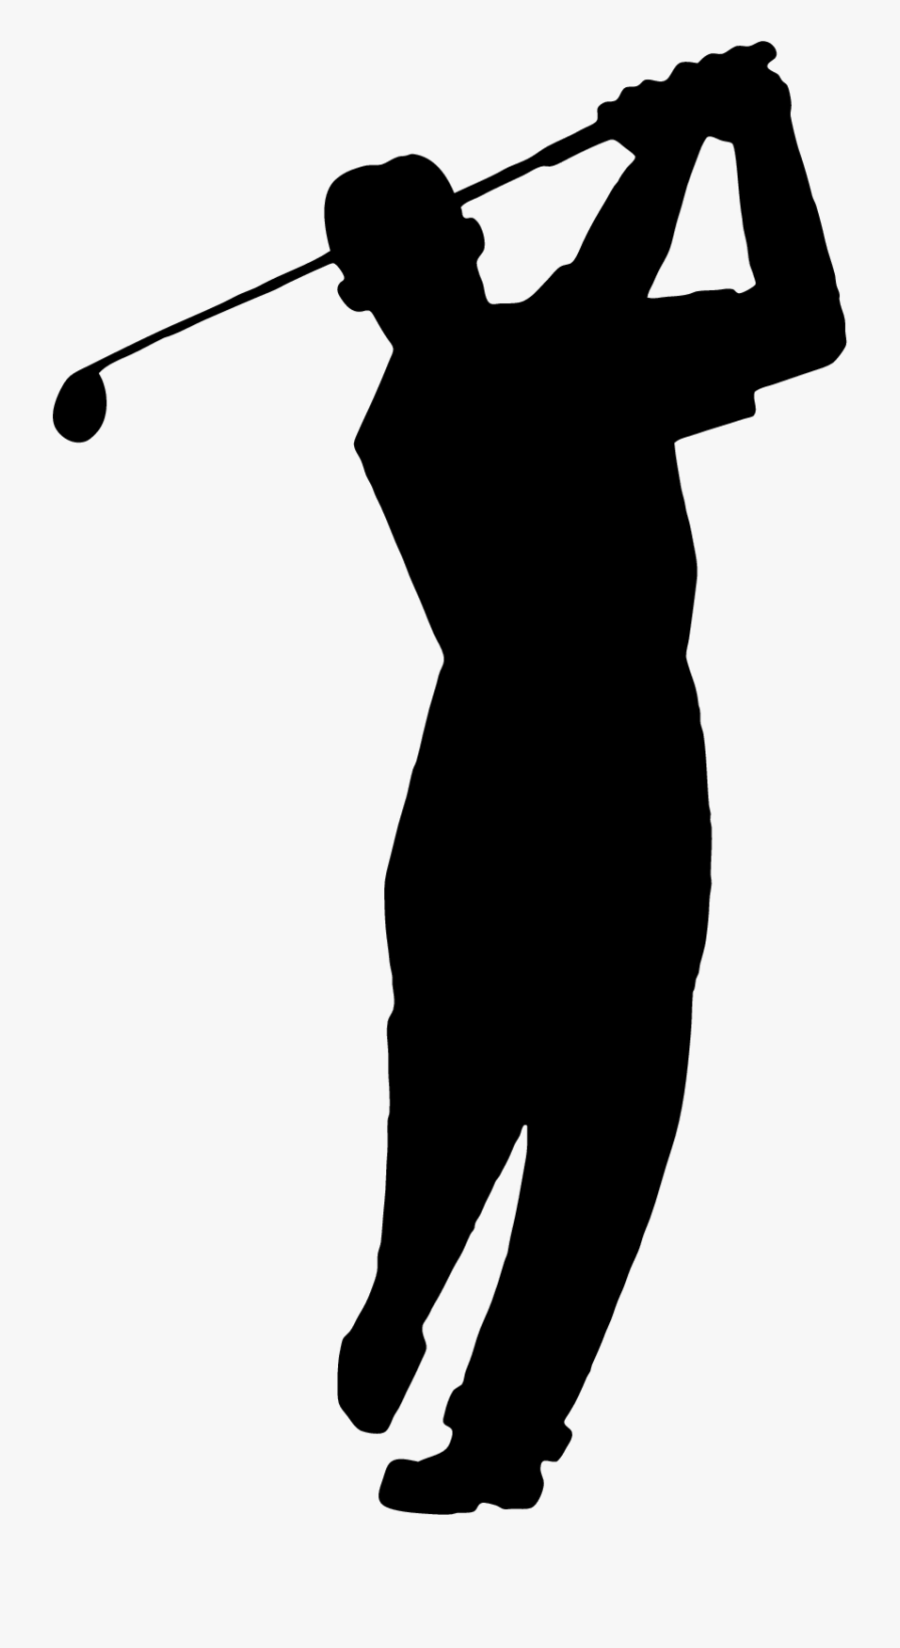 Golfer Golf Clubs Golf Stroke Mechanics Golf Balls - Men Golf Silhouette, Transparent Clipart